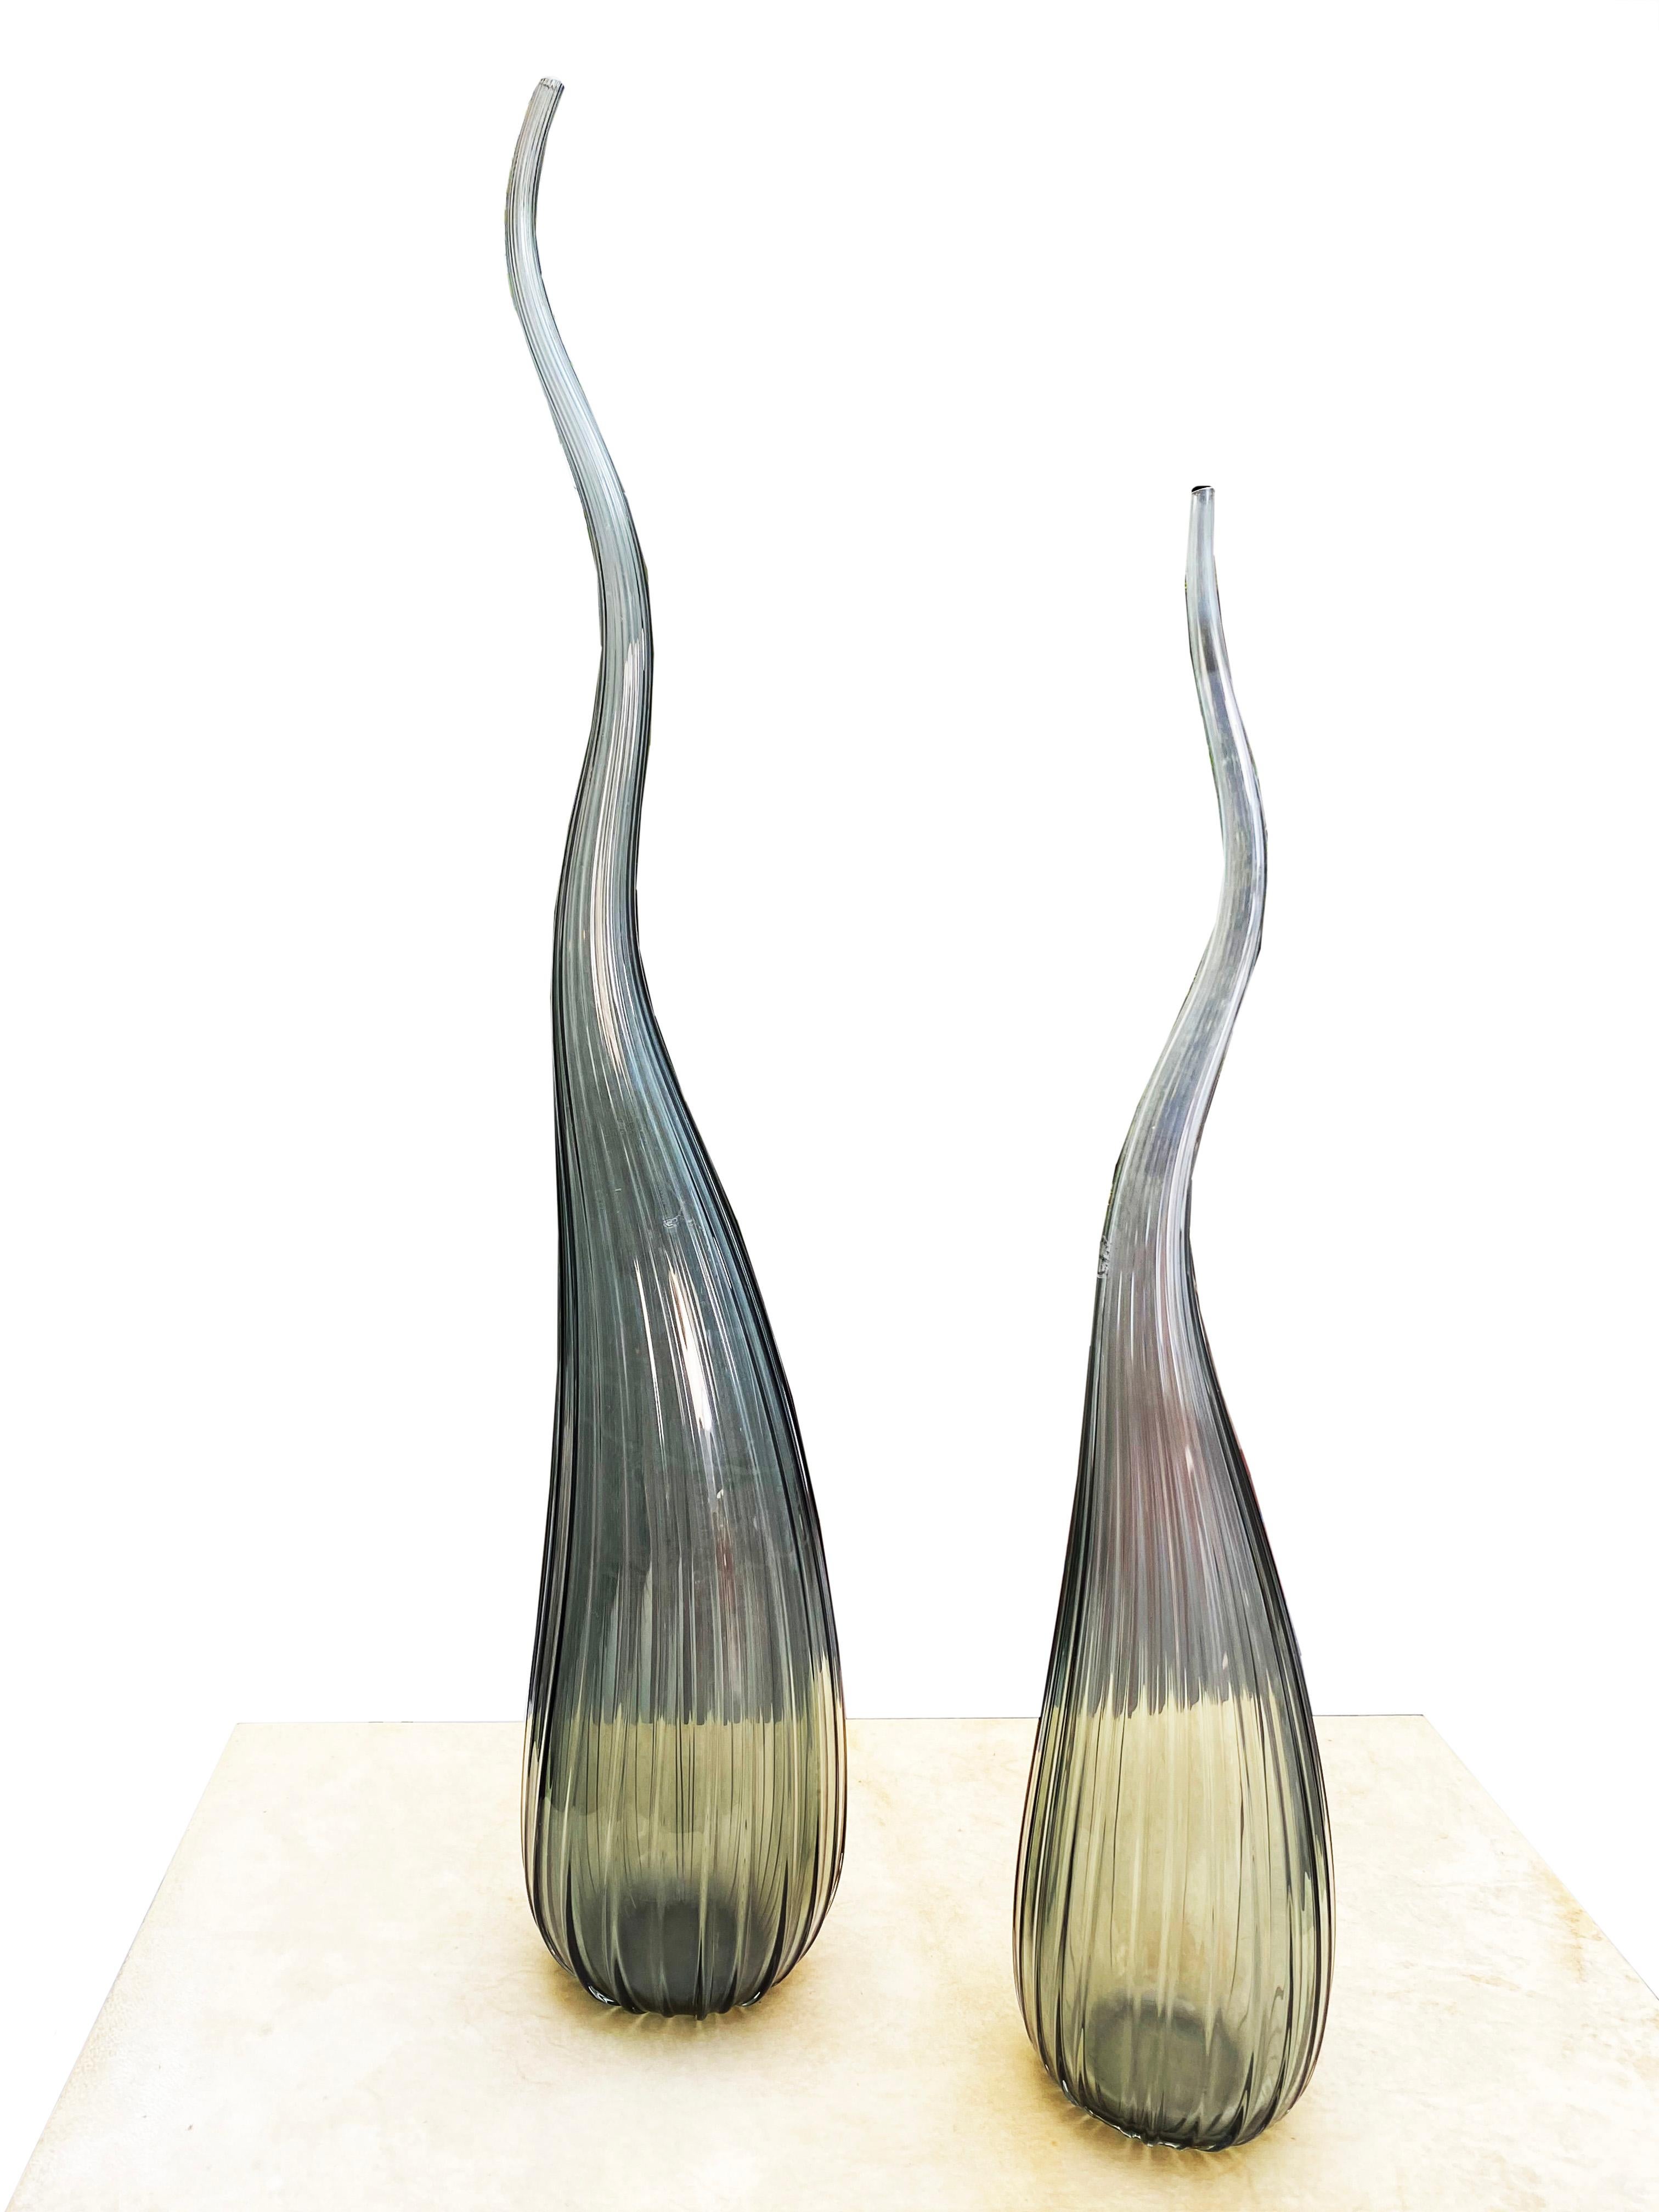 Salviati Murano
von Renzo Stellon
Modell Aria
2 Soliflores Vasen Modell Aria
aus rauchgrauem Muranoglas
piriforme Form mit langem, turbulentem Hals, der mit feinen Rippen verziert ist
unterzeichnet und datiert 2009
1 von 55 cm hoch
1 von 62